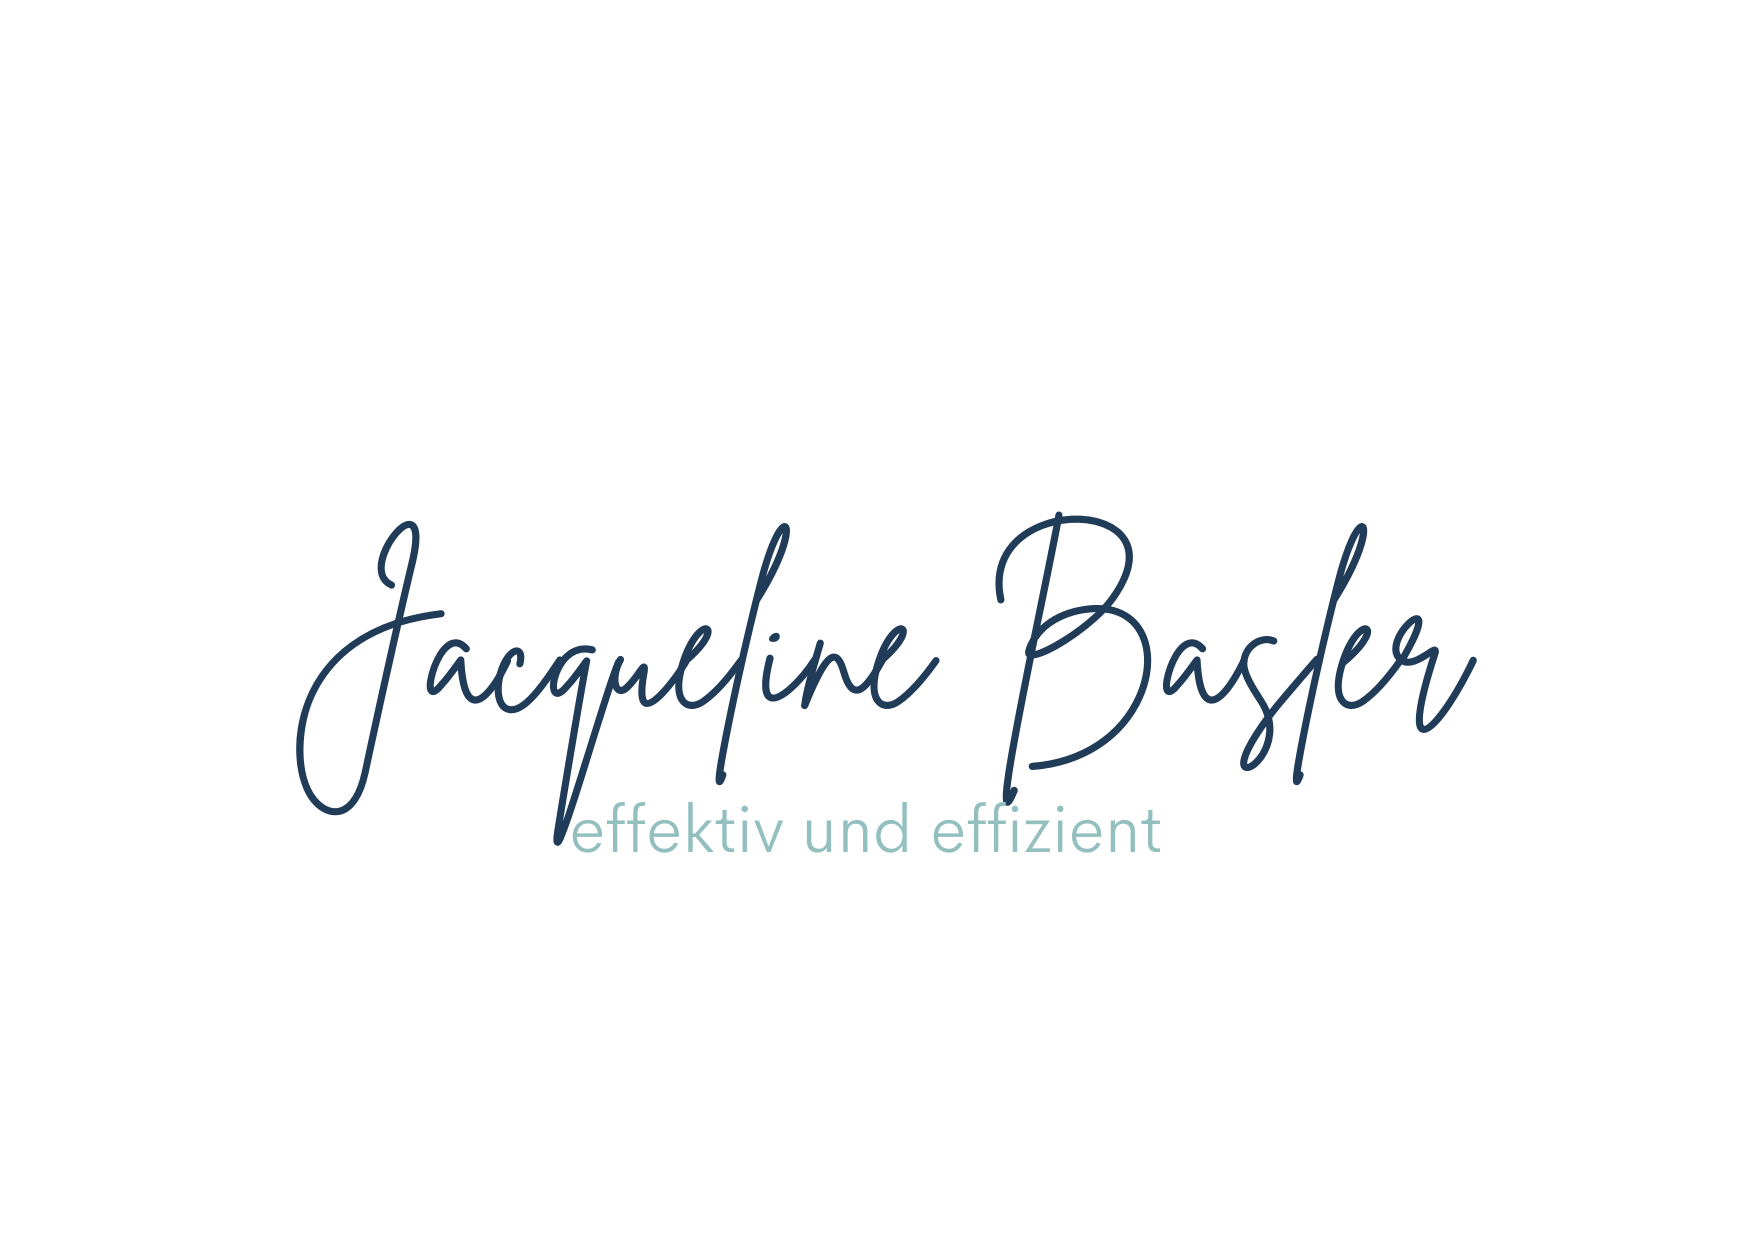 Jacqueline Basler - deine virtuelle Assistentin